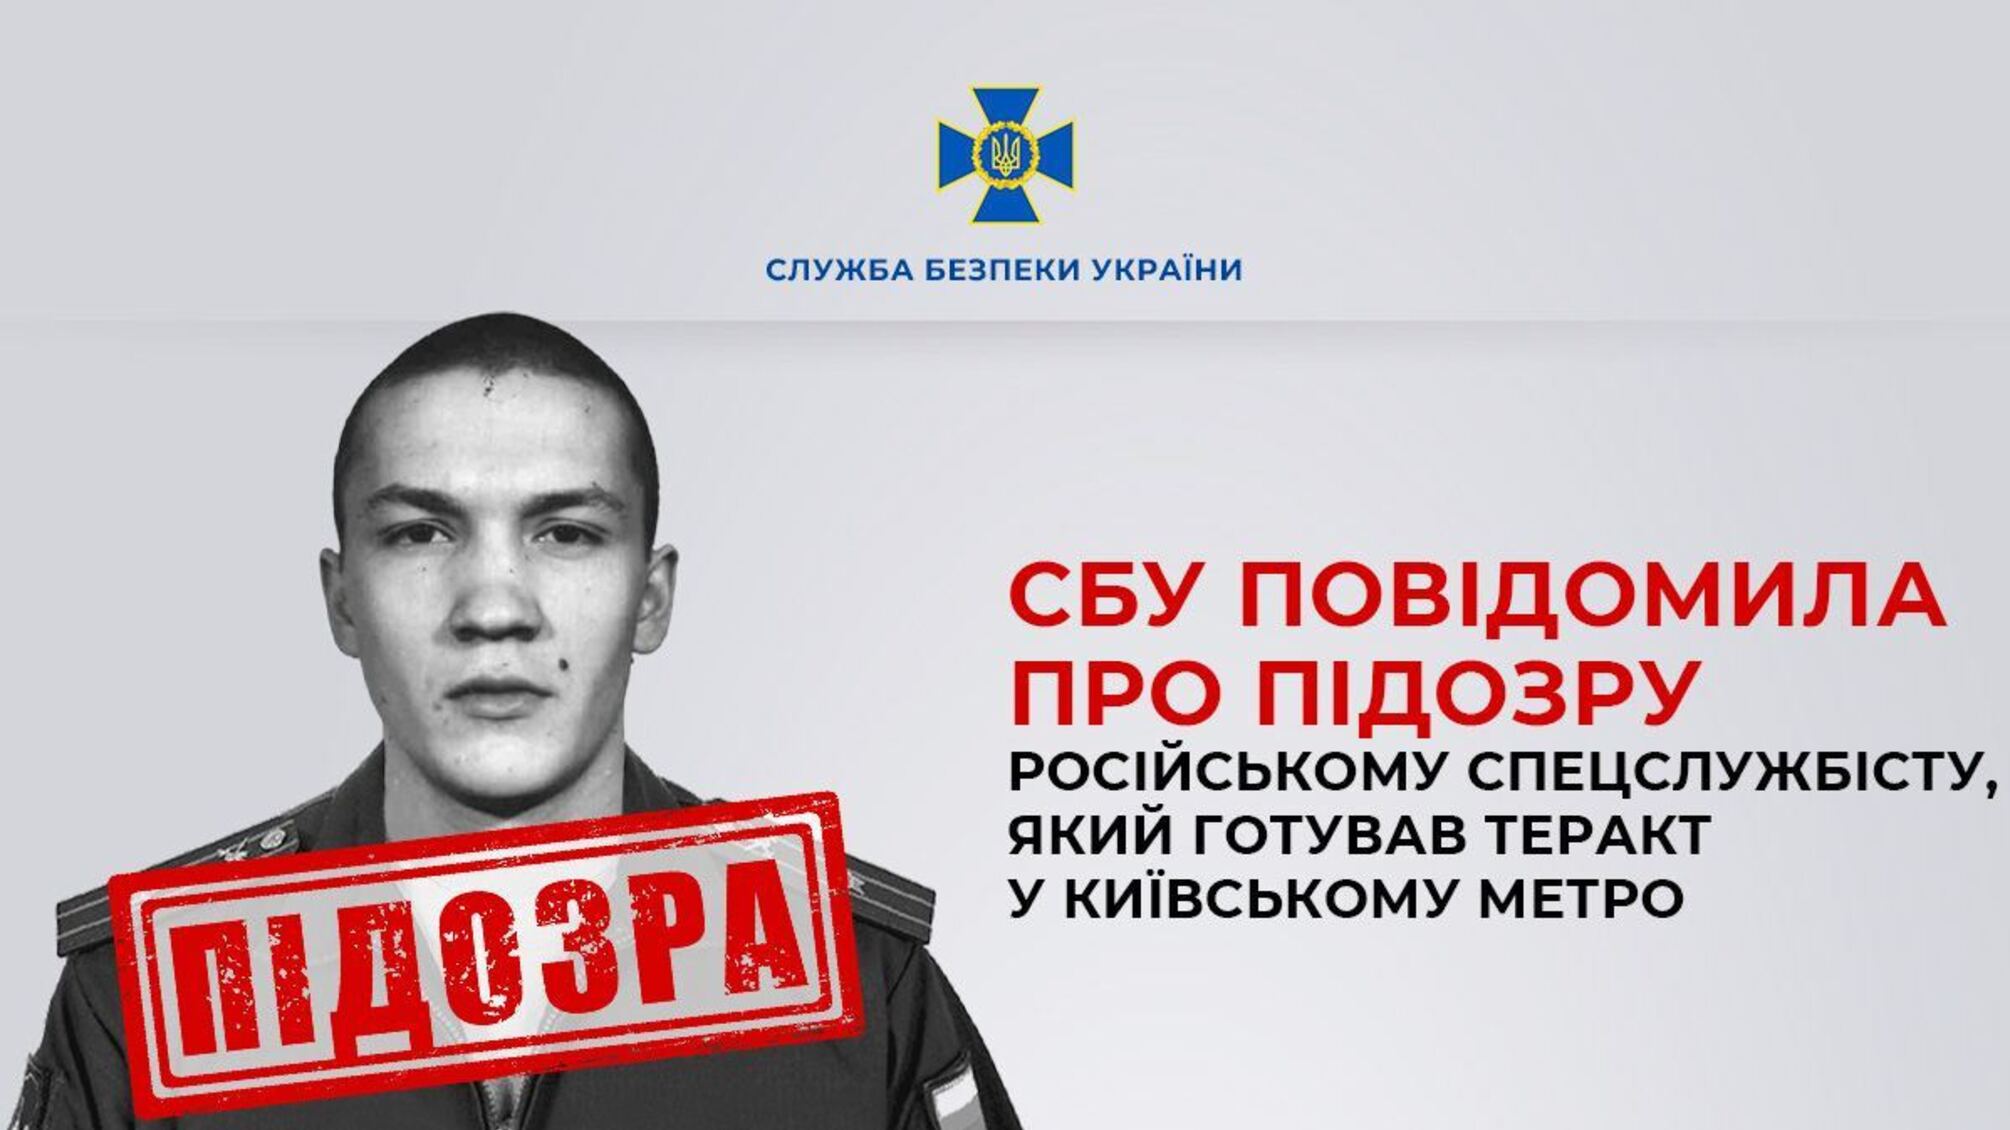 Готовил теракт в киевском метро: в столице задержали российского агента